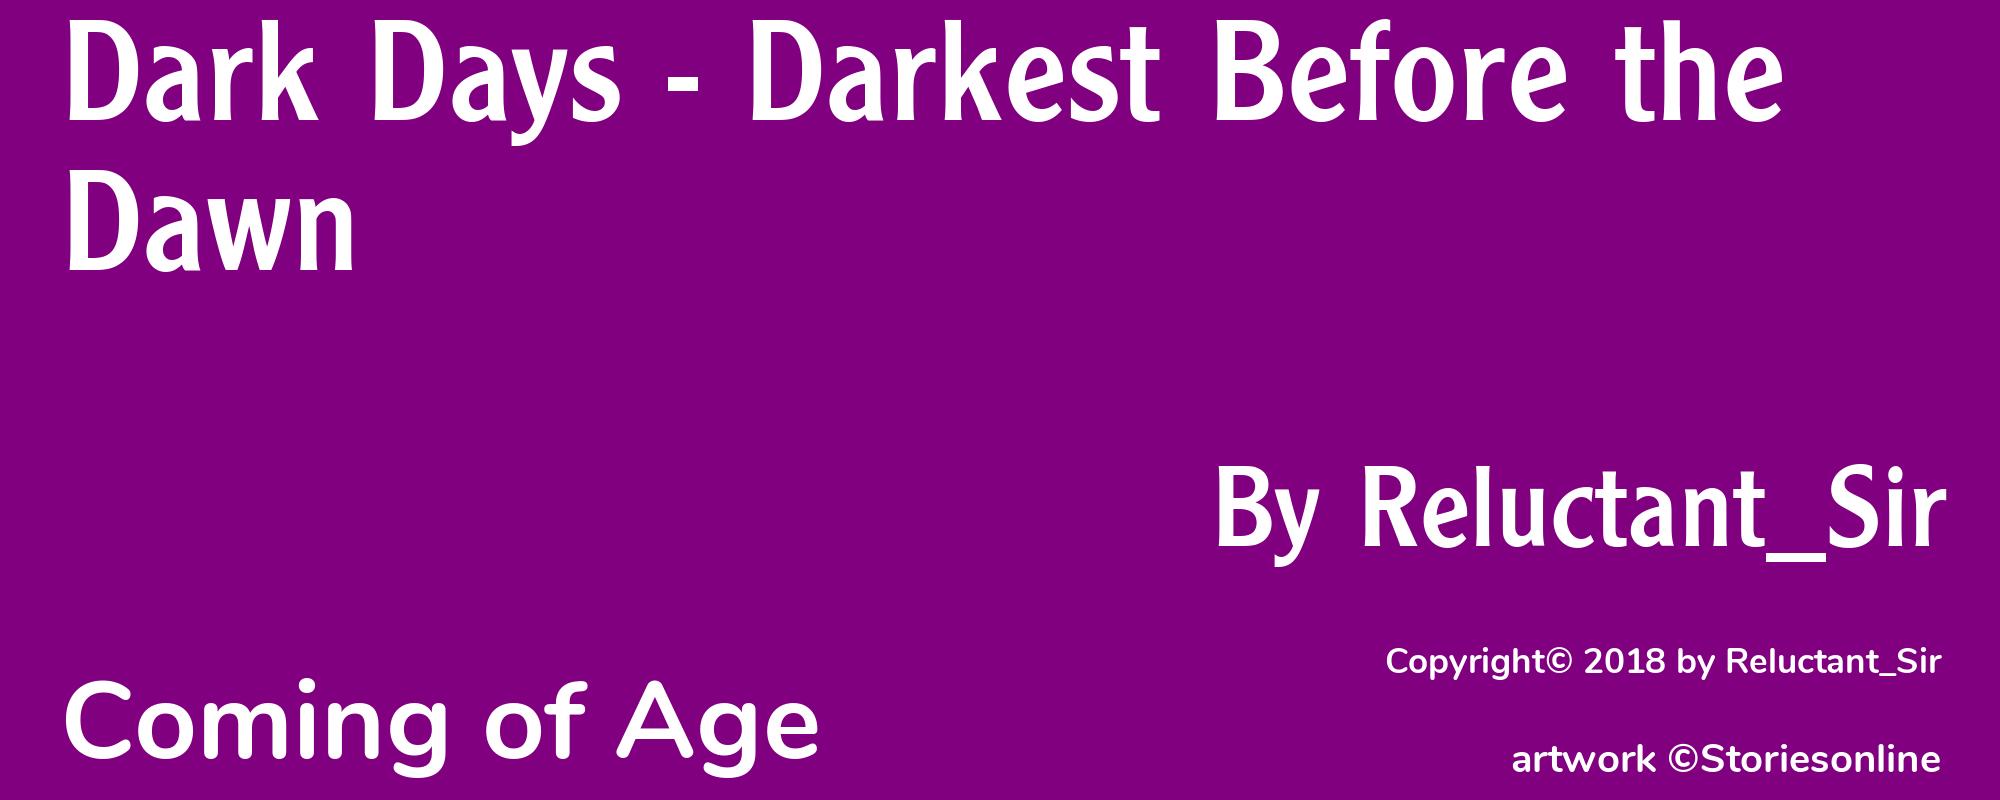 Dark Days - Darkest Before the Dawn - Cover